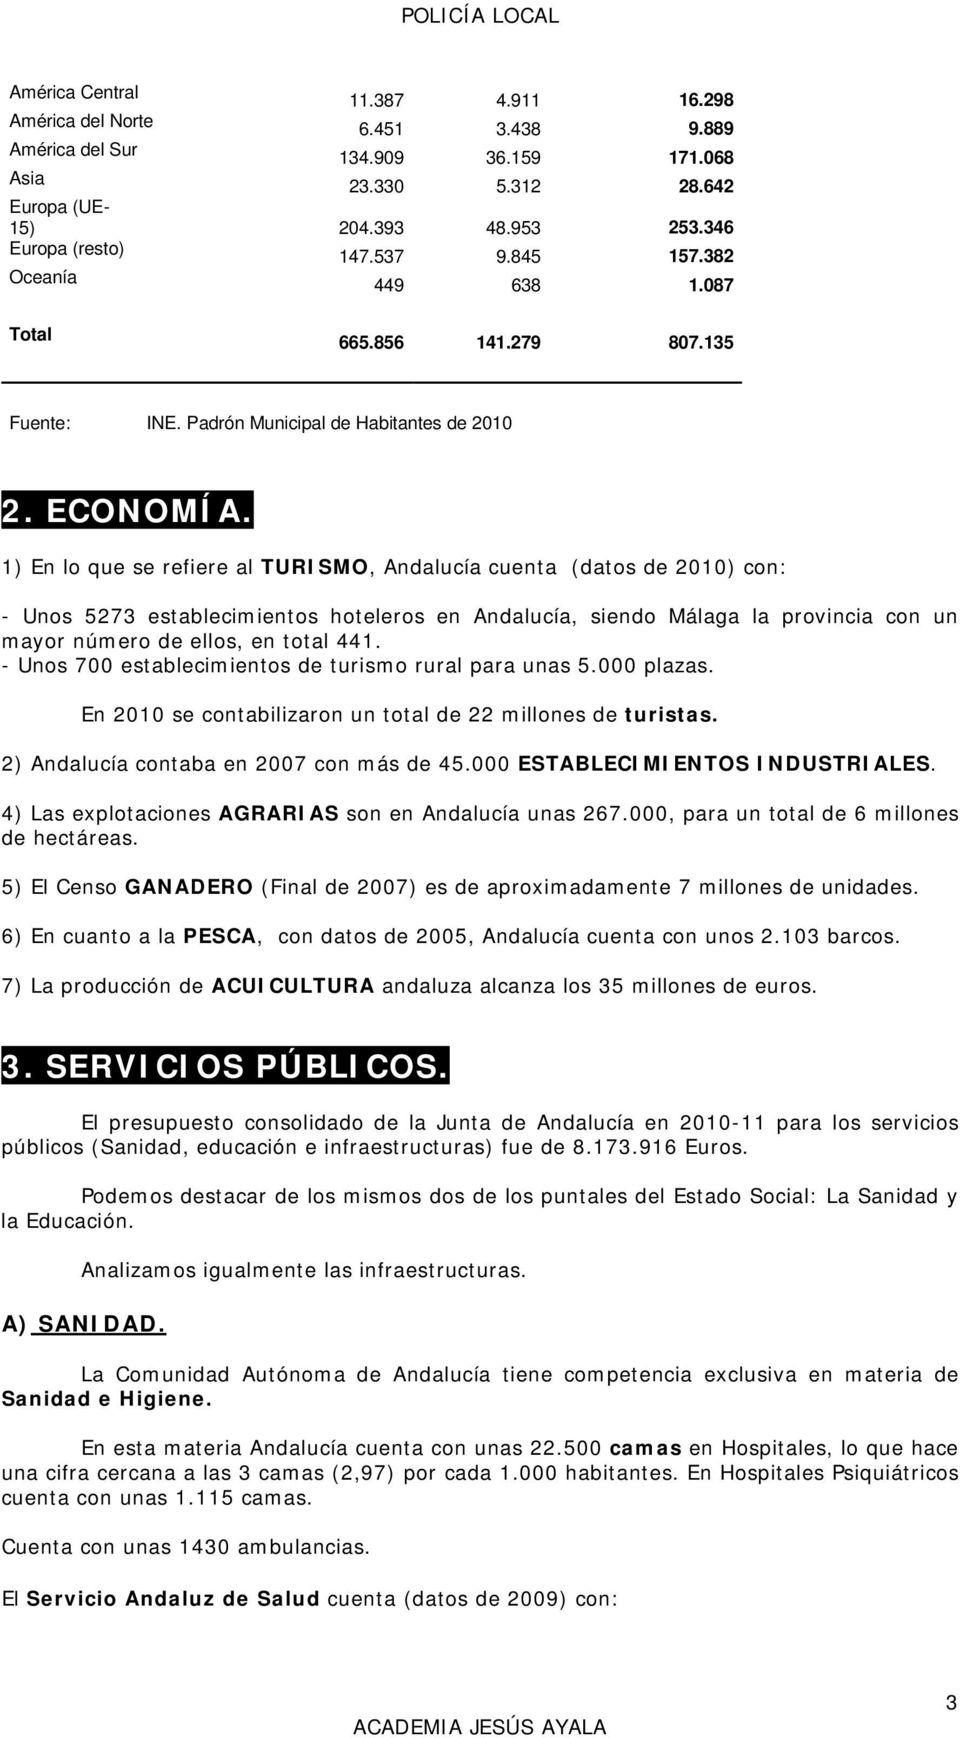 1) En lo que se refiere al TURISMO, Andalucía cuenta (datos de 2010) con: - Unos 5273 establecimientos hoteleros en Andalucía, siendo Málaga la provincia con un mayor número de ellos, en total 441.